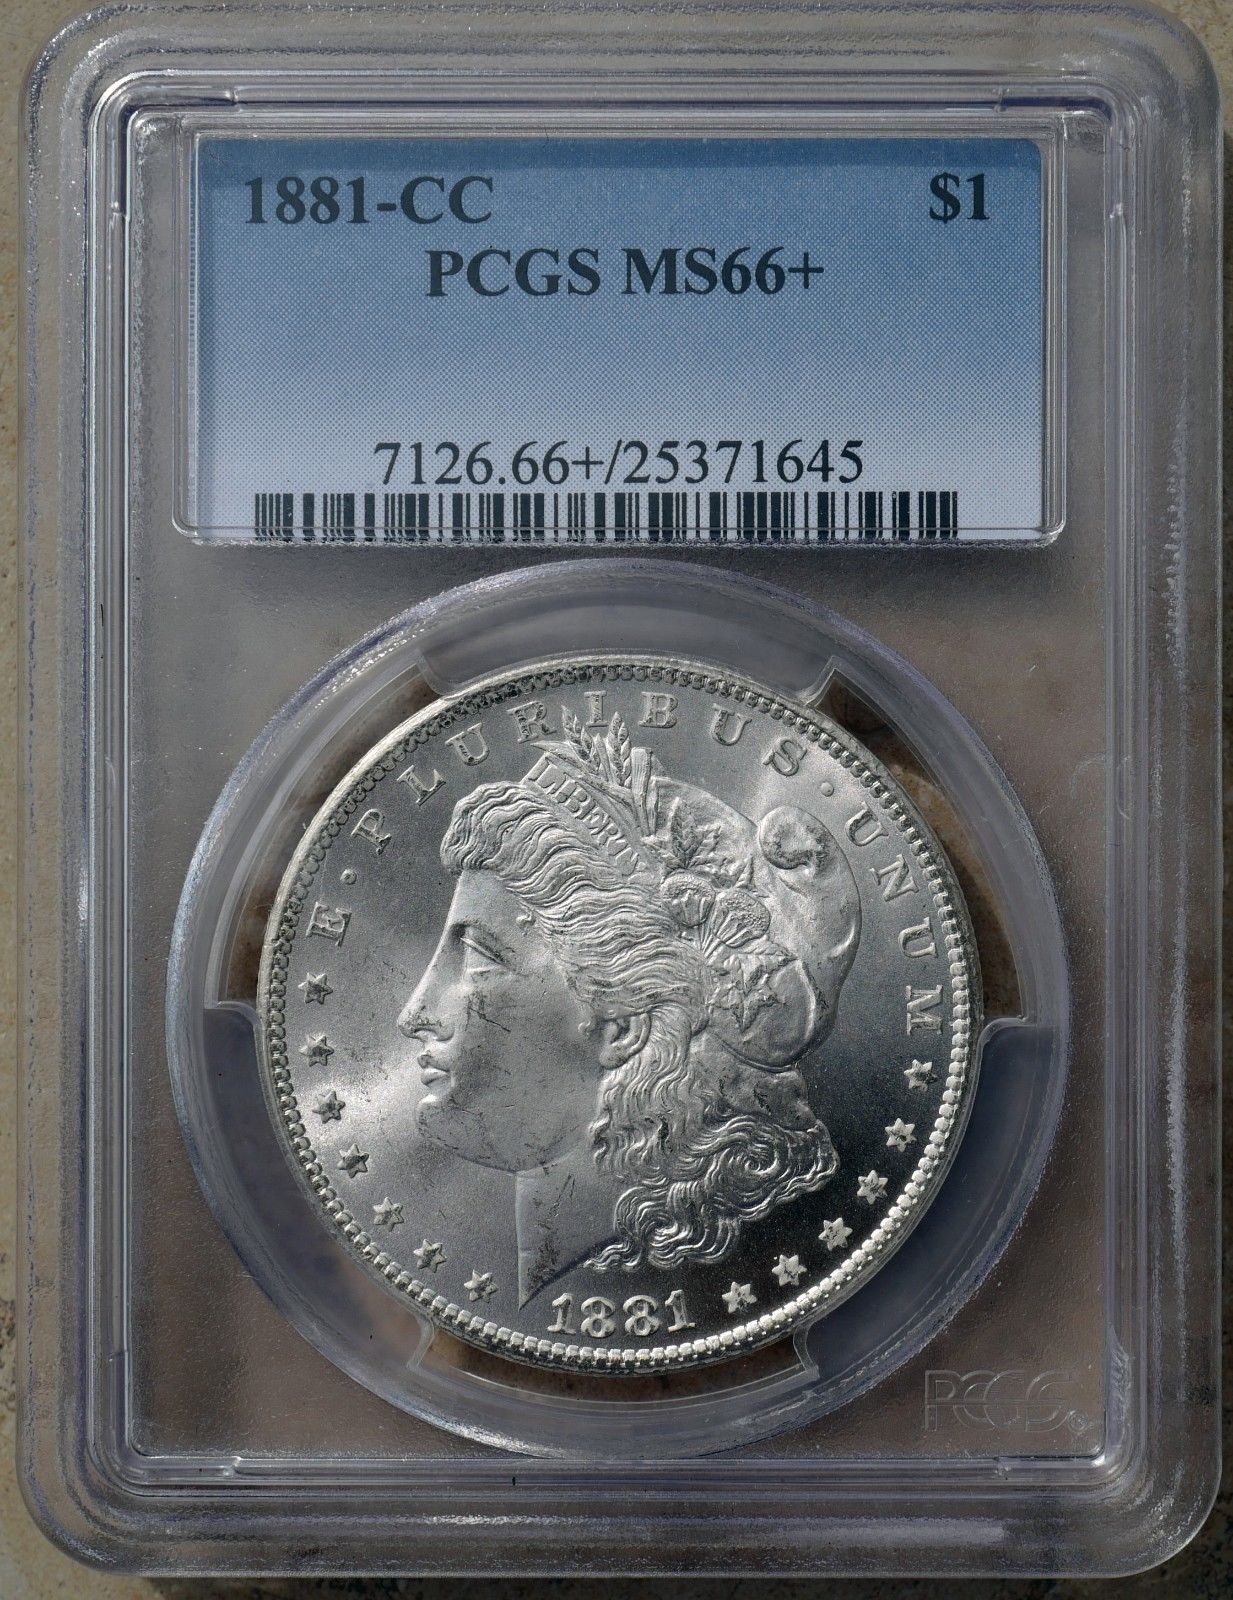 1881 CC 66+ obv my coin.jpg